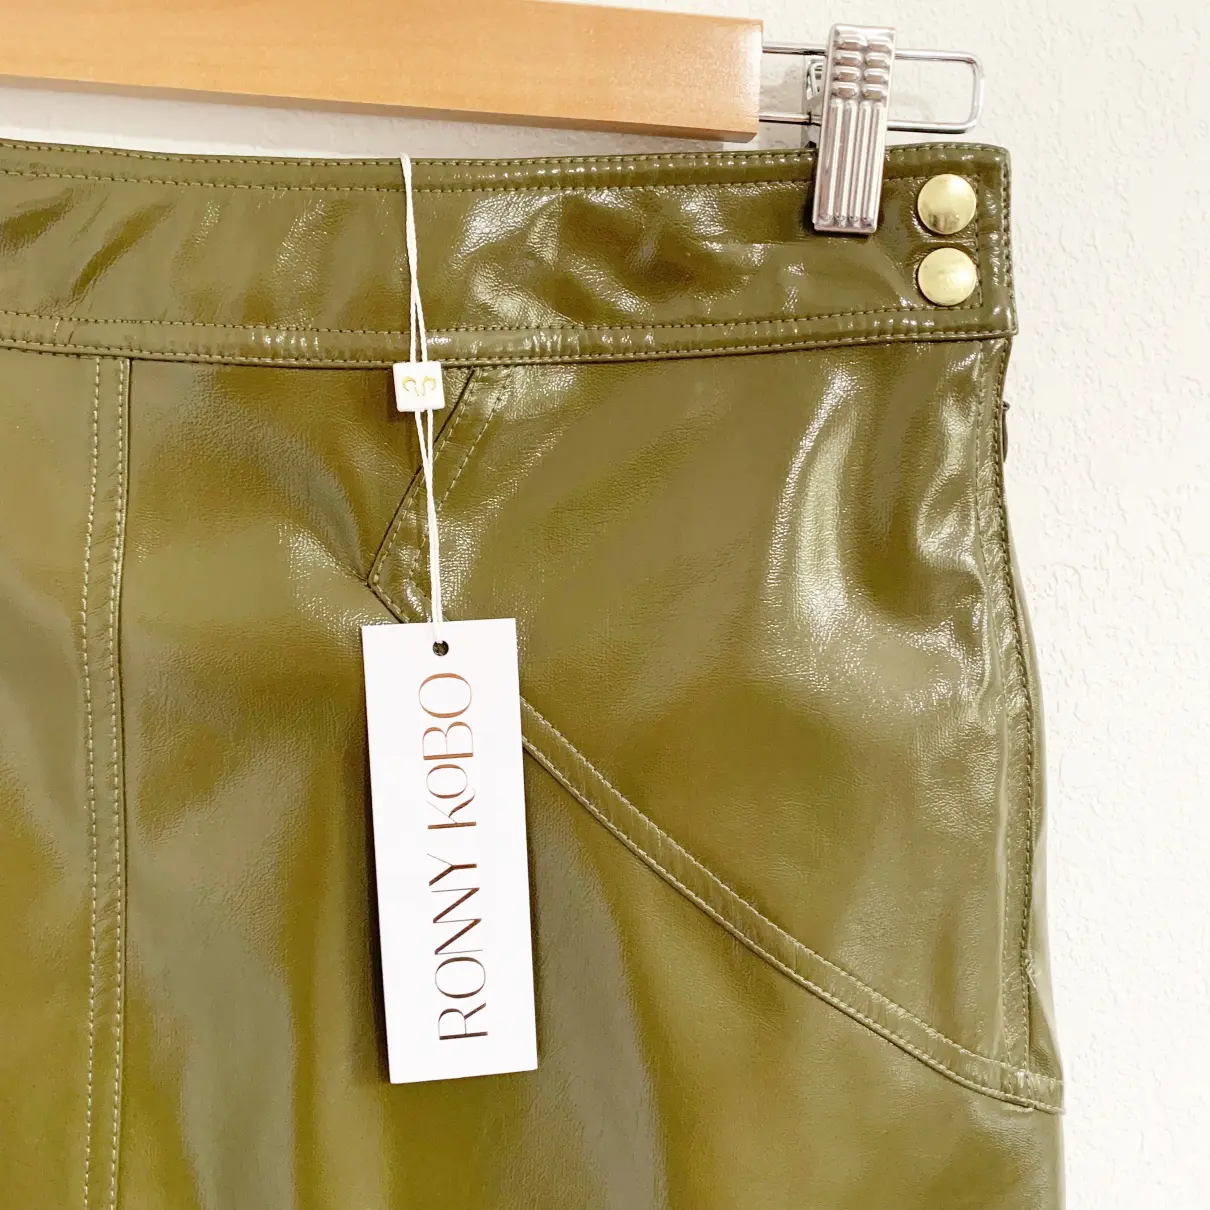 Vegan leather mini skirt Ronny Kobo